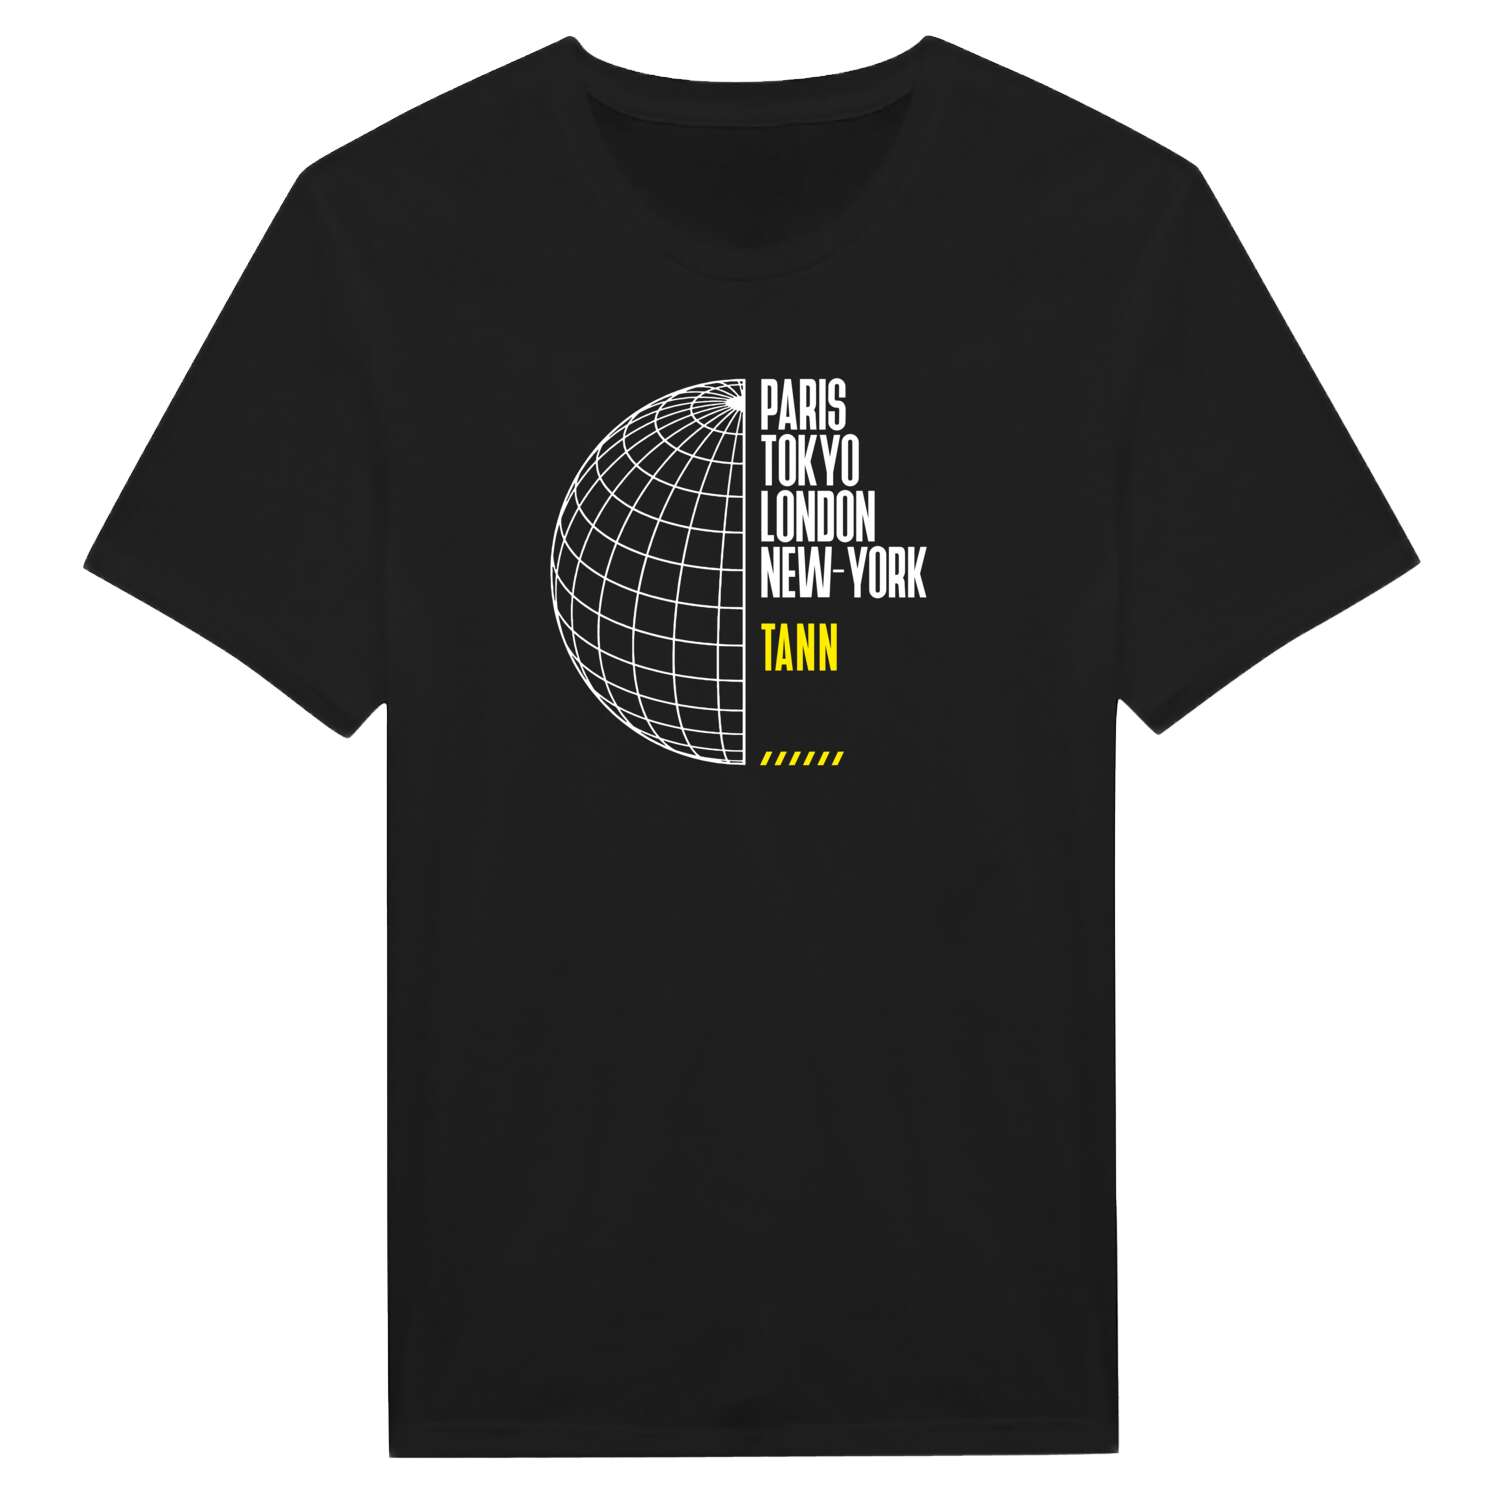 Tann T-Shirt »Paris Tokyo London«